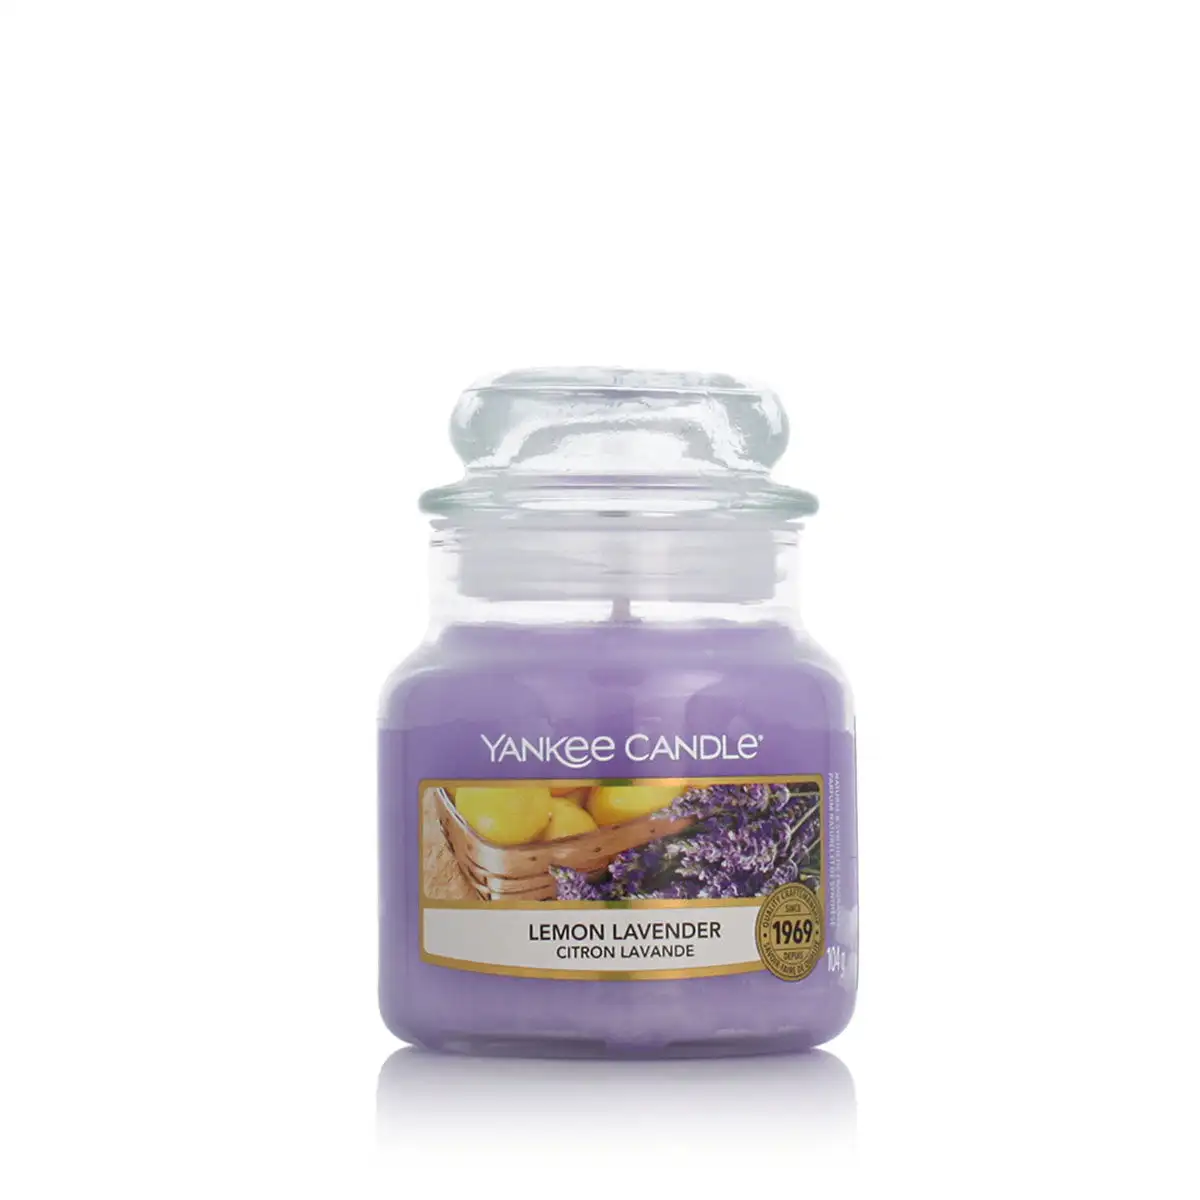 Bougie parfumee yankee candle lemon lavender 104 g_6650. DIAYTAR SENEGAL - L'Art de Vivre avec Authenticité. Explorez notre gamme de produits artisanaux et découvrez des articles qui apportent une touche unique à votre vie.